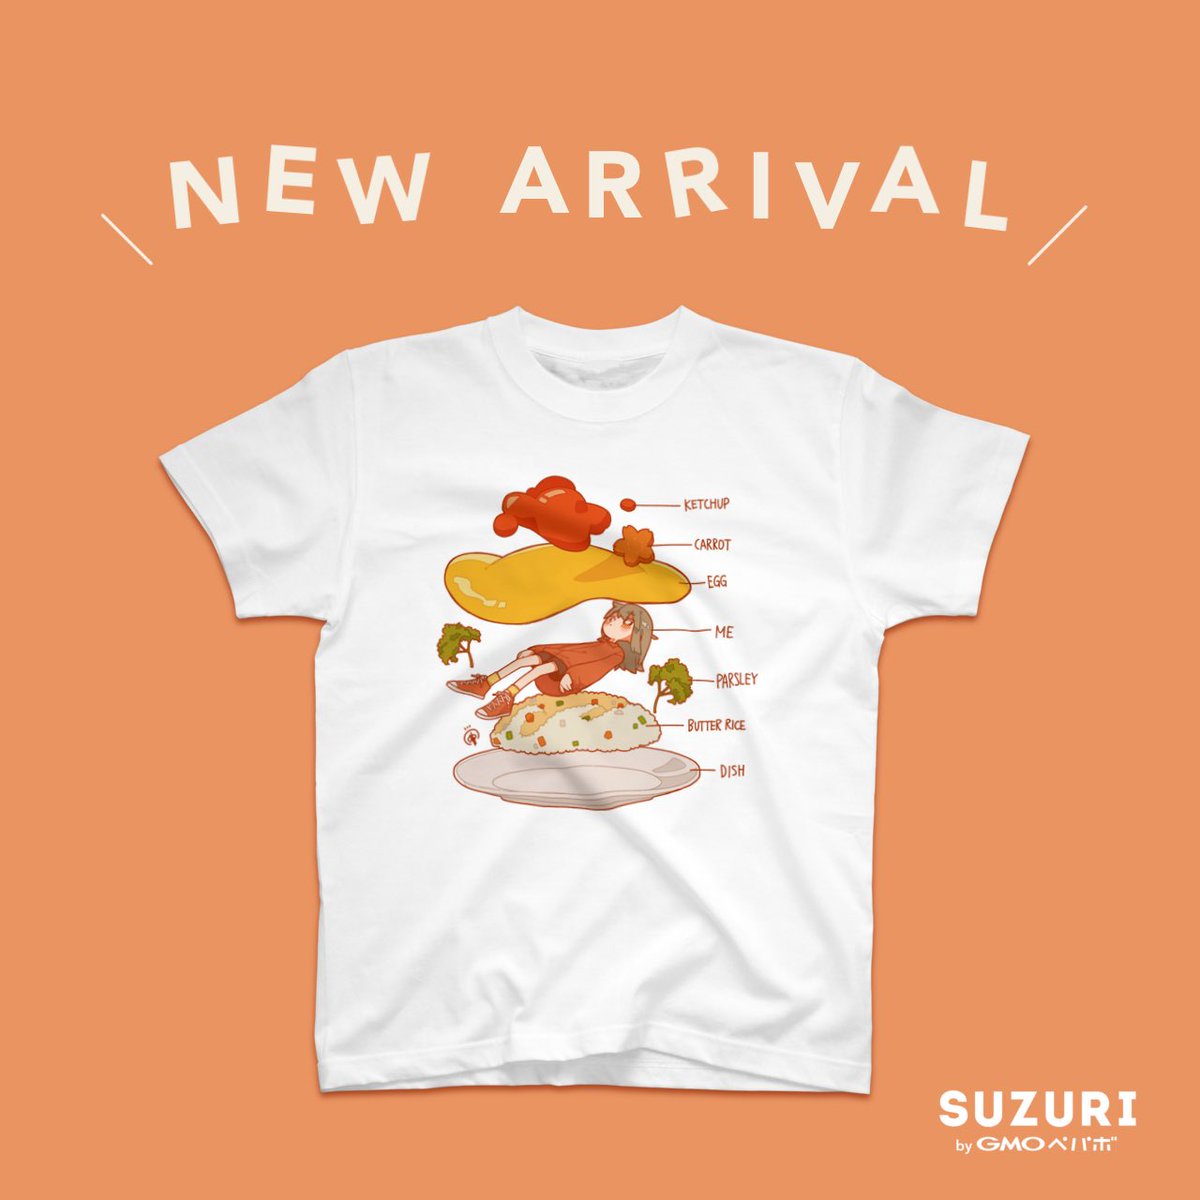 「「 お知らせ 」SUZURIにて、オムライスTシャツ全4種の販売を開始しました!」|すんち🕯5/5ﾃｨｱ【I35a】のイラスト